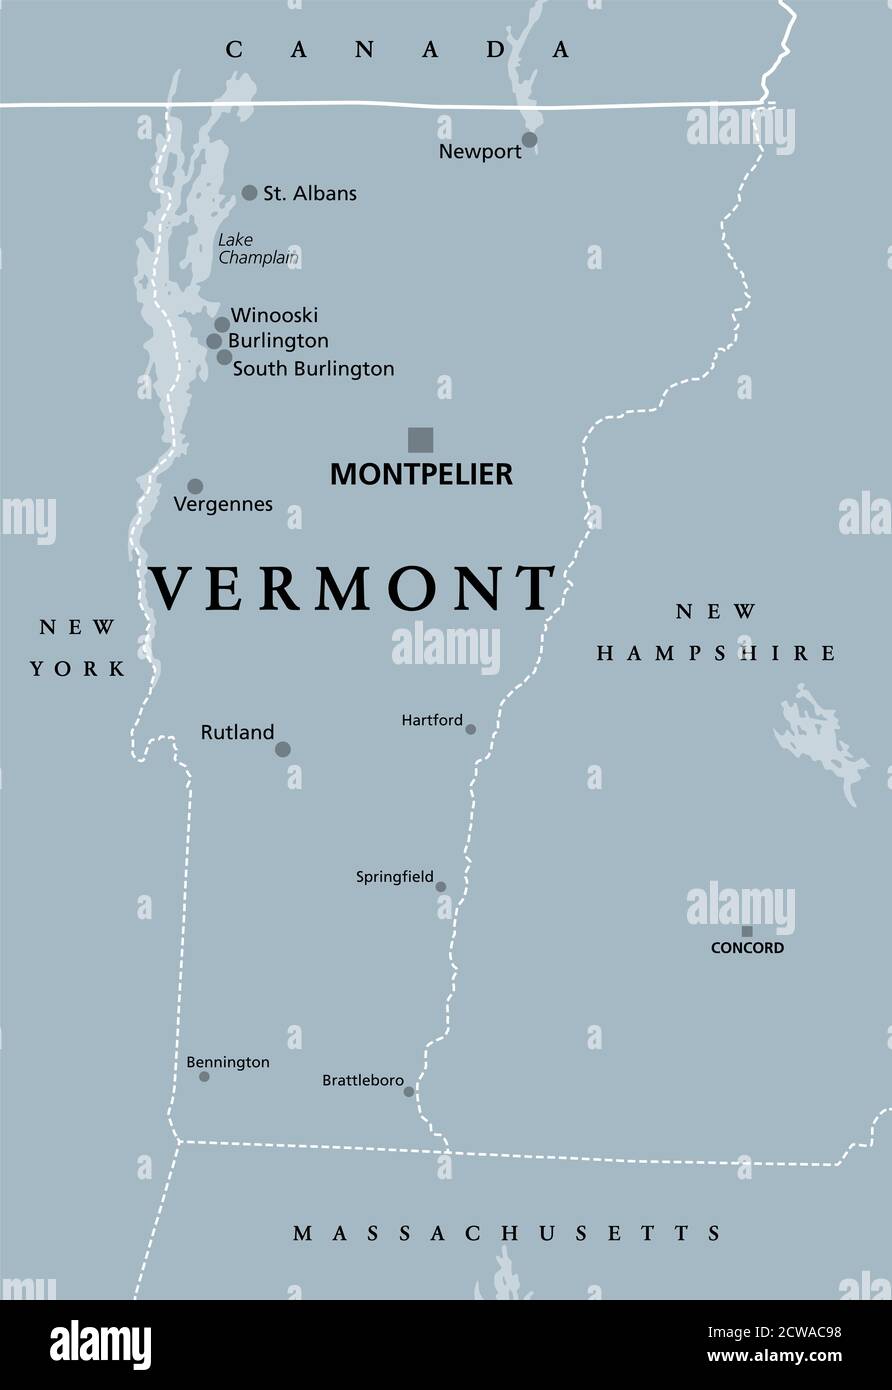 Vermont, VT, mappa politica grigia con la capitale Montpelier. Stato nordorientale nella regione del New England degli Stati Uniti d'America. Foto Stock